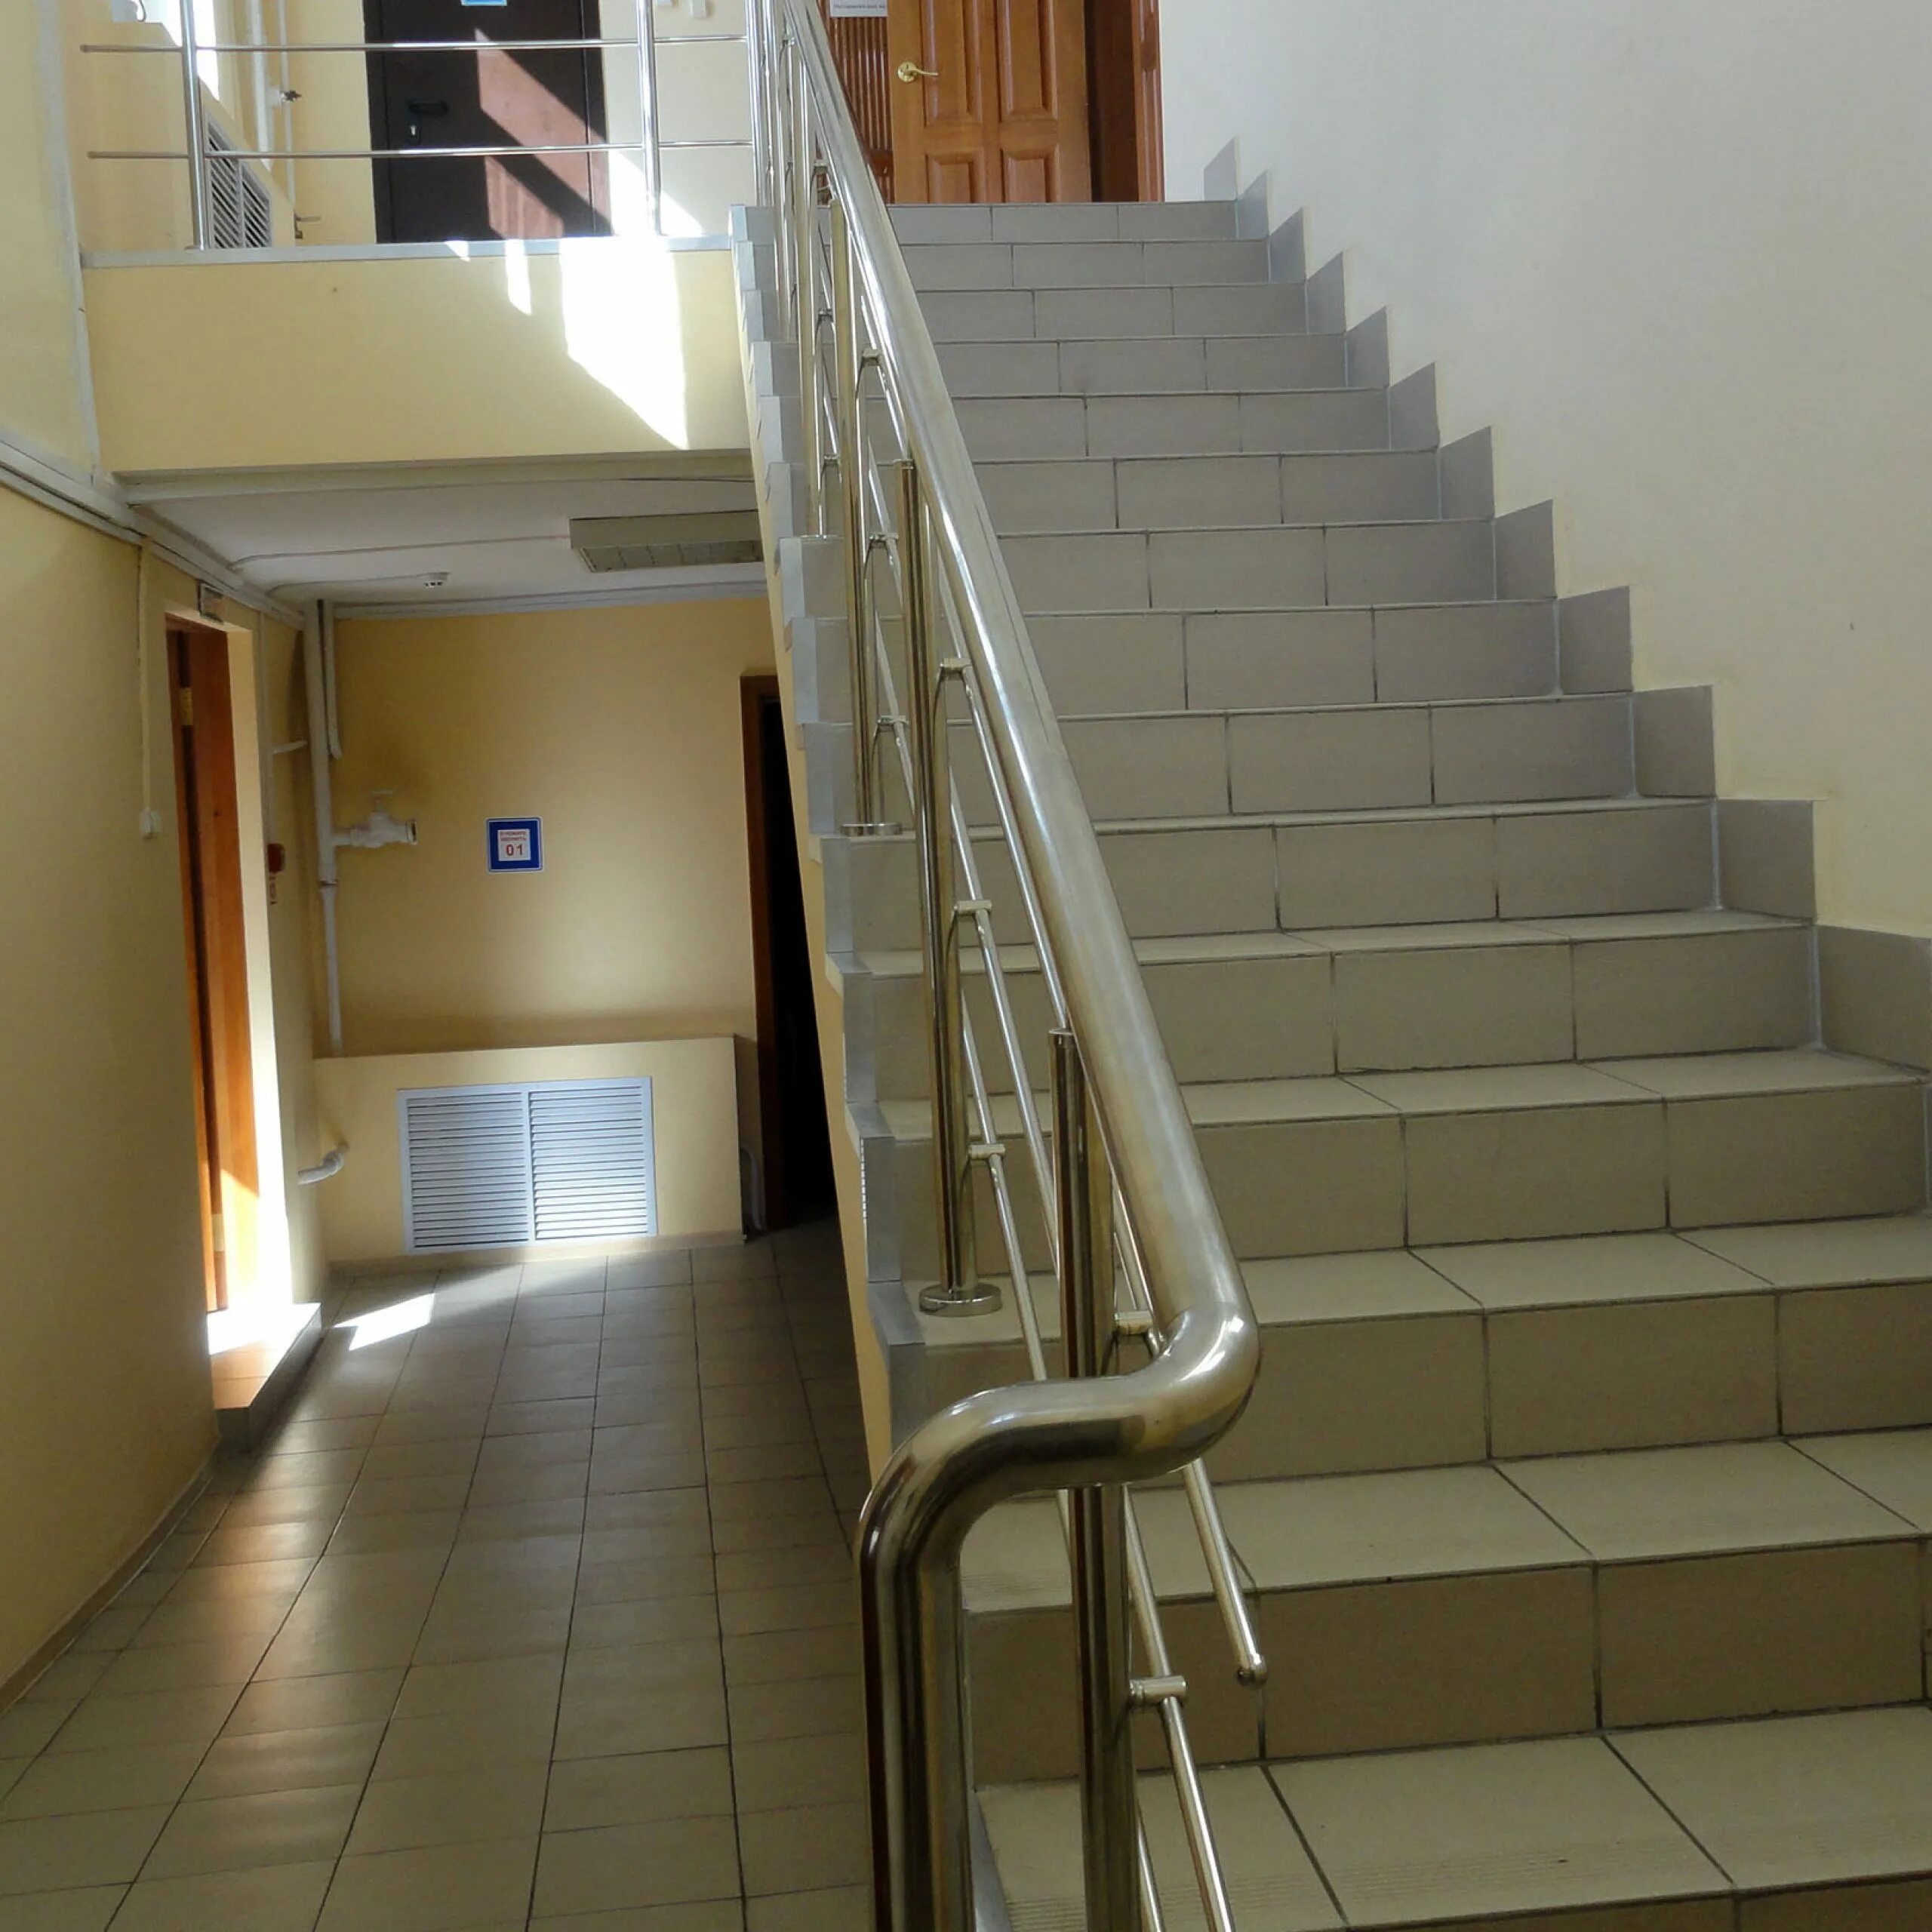 В школе втором этаже. Лестница в школе. Лестница в больнице. Лестница в многоквартирном доме. Лестничный пролет в подъезде.